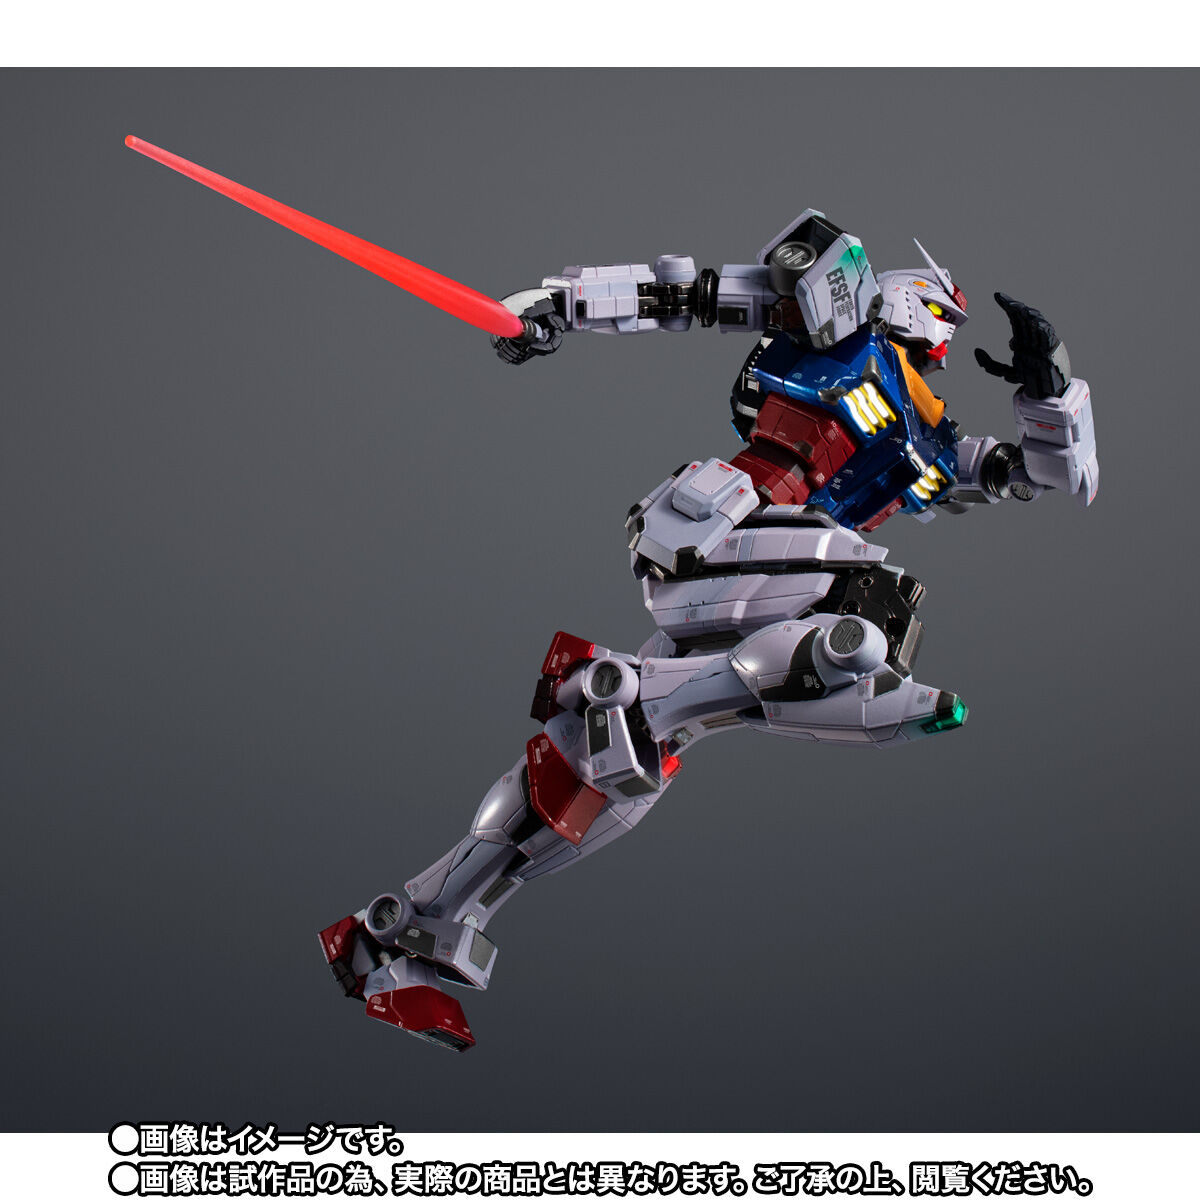 【限定販売】超合金×GUNDAM FACTORY YOKOHAMA『RX-78F00 GUNDAM -Night illuminated ver.-』可動フィギュア-004